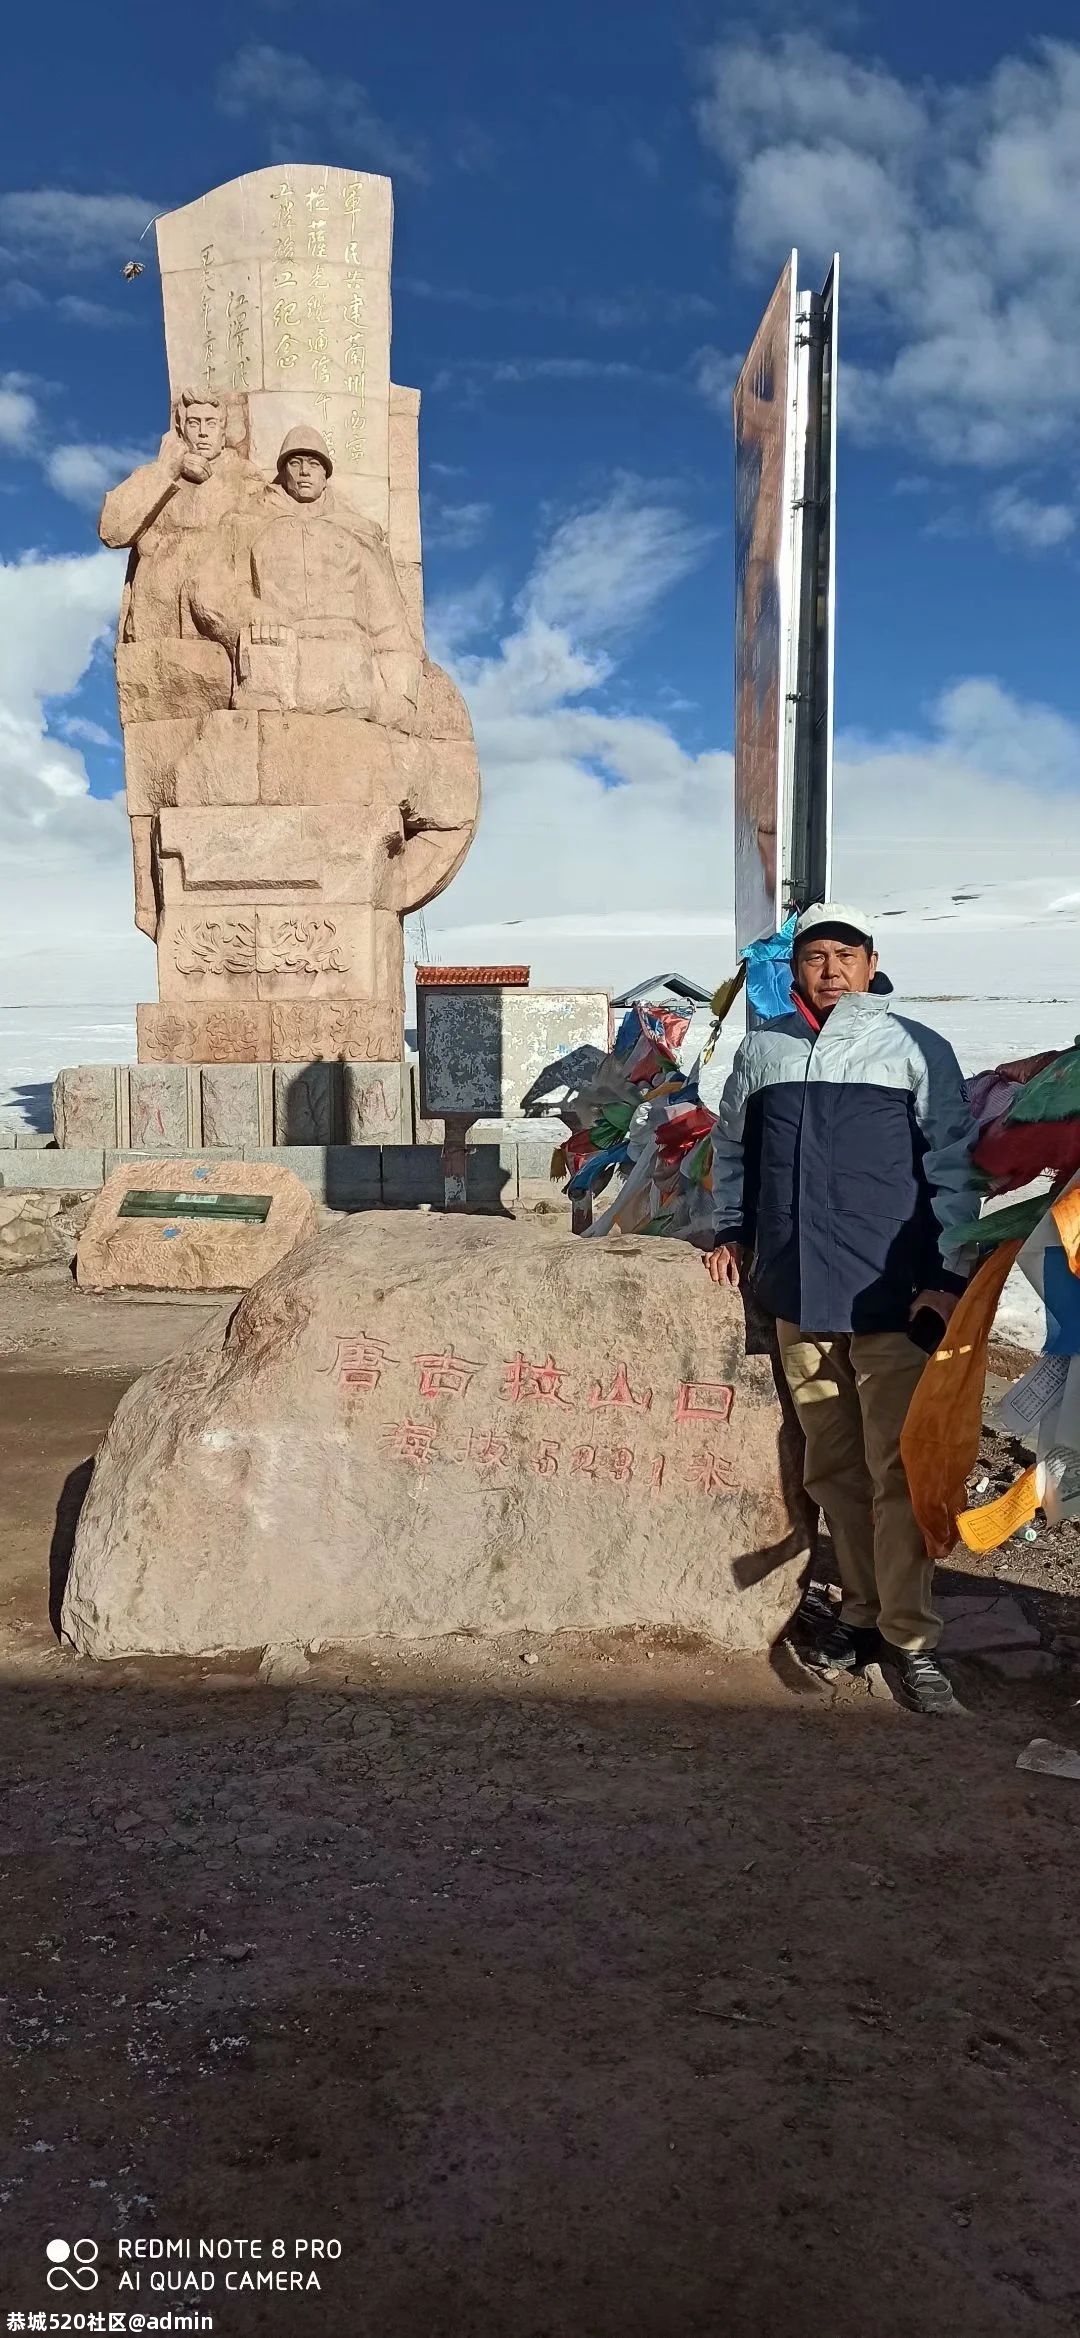 想去西藏的朋友看过来：《我的西藏自驾游记》194 / 作者:罗古 / 帖子ID:275846